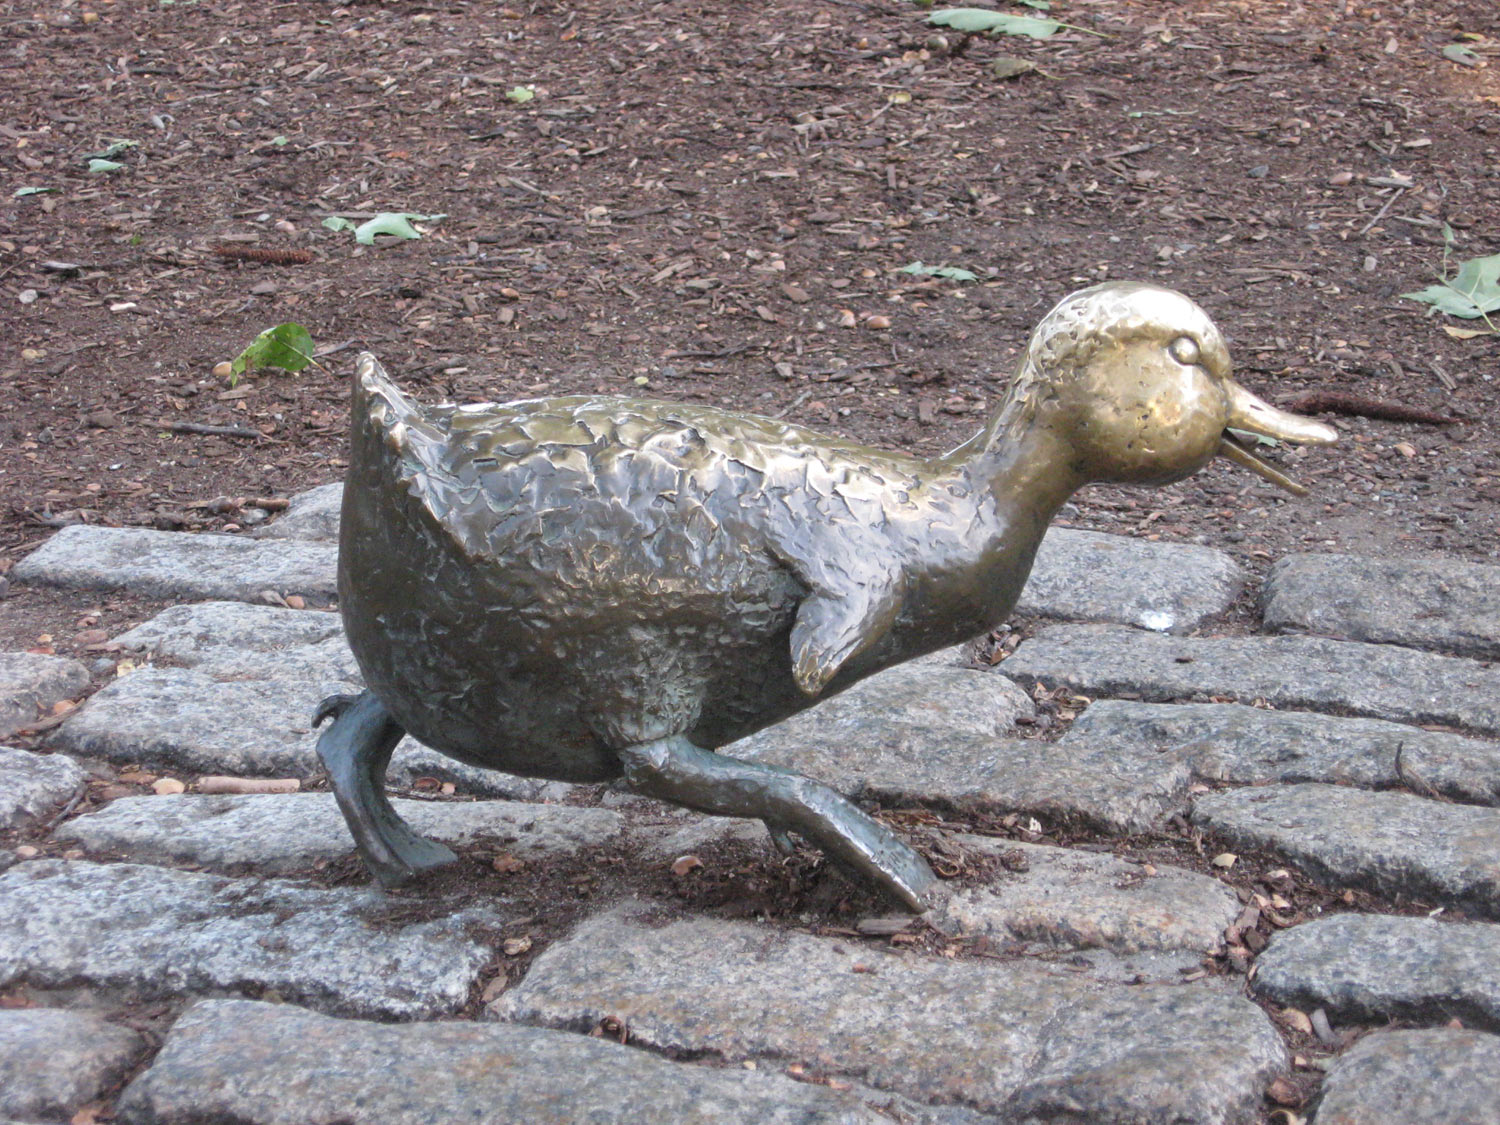 Boston - the public garden - an outdoor sculpture - Make Way for Ducklings